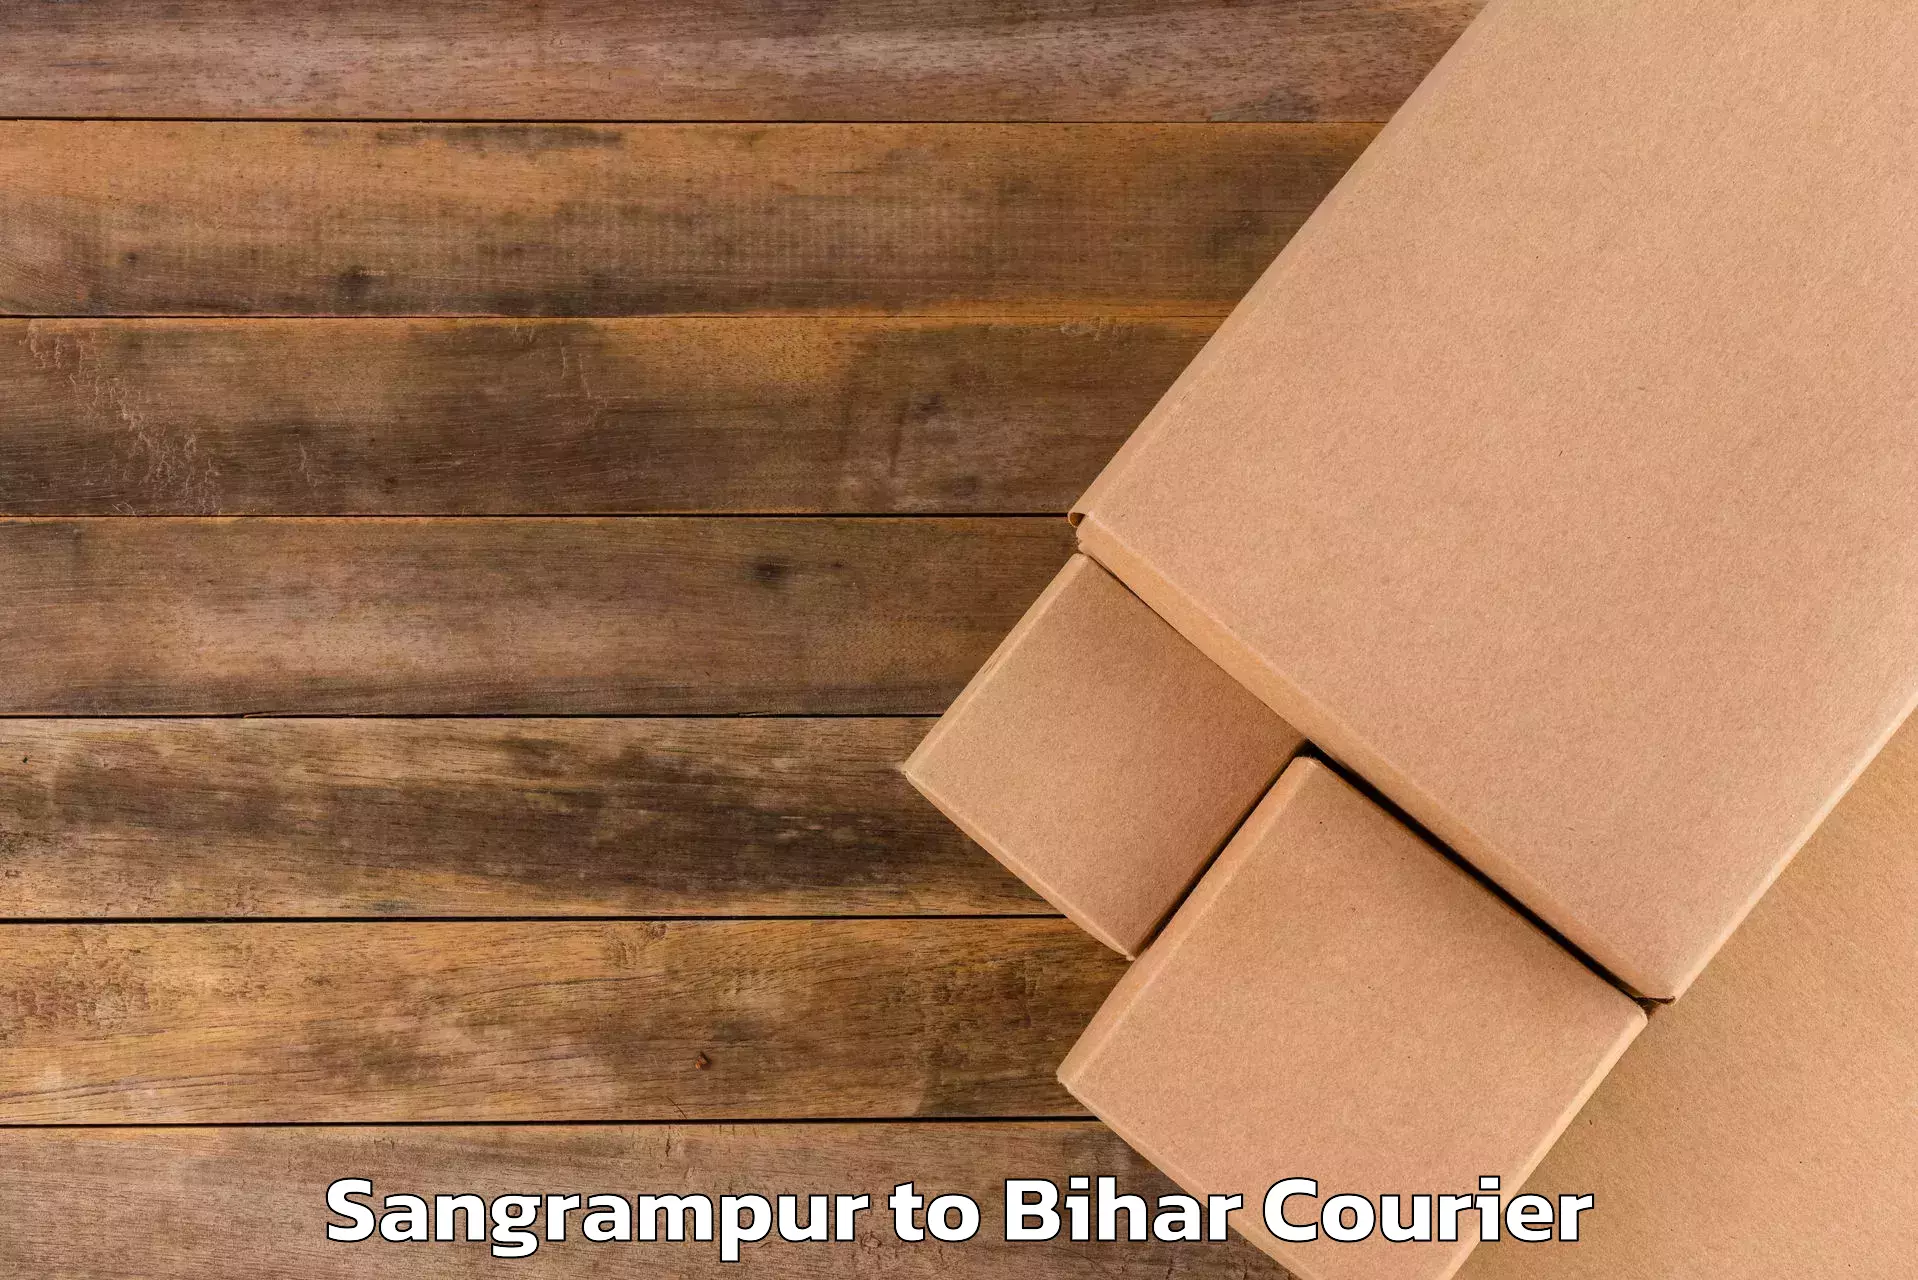 Electronic items luggage shipping Sangrampur to Katihar